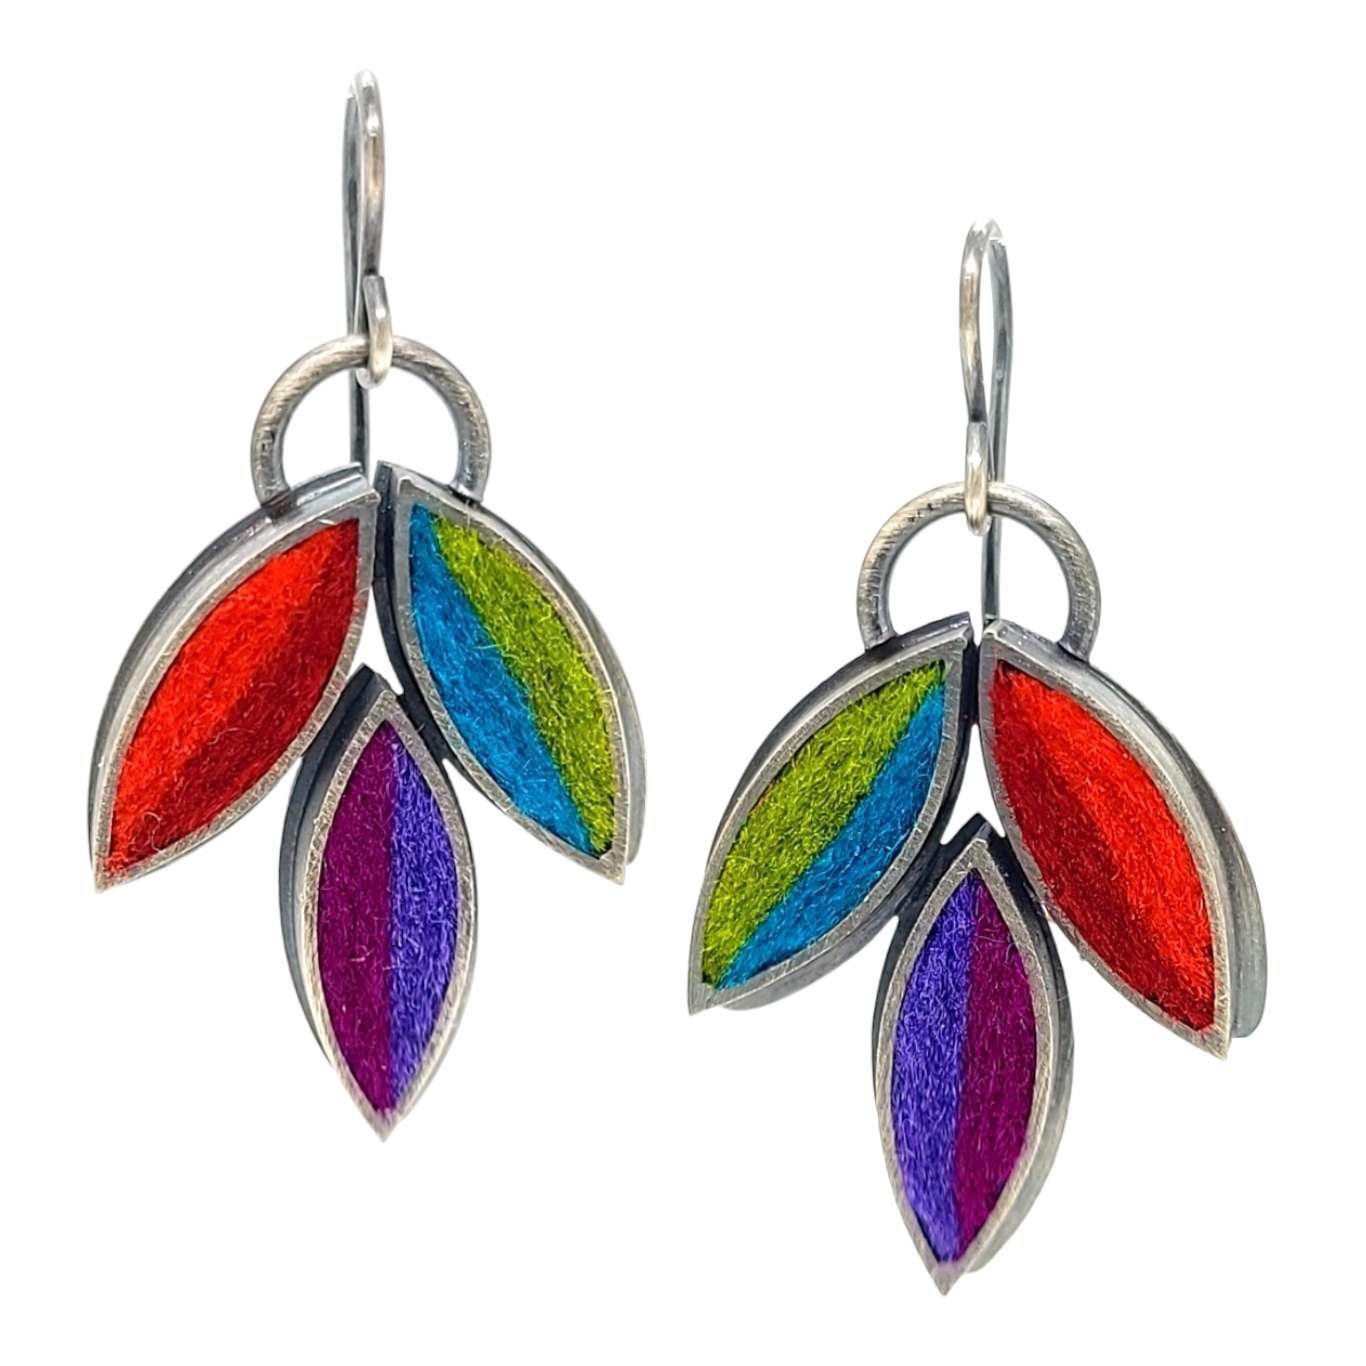 Earrings - Lotus Flower Drops in Multicolor by Michele A. Friedman